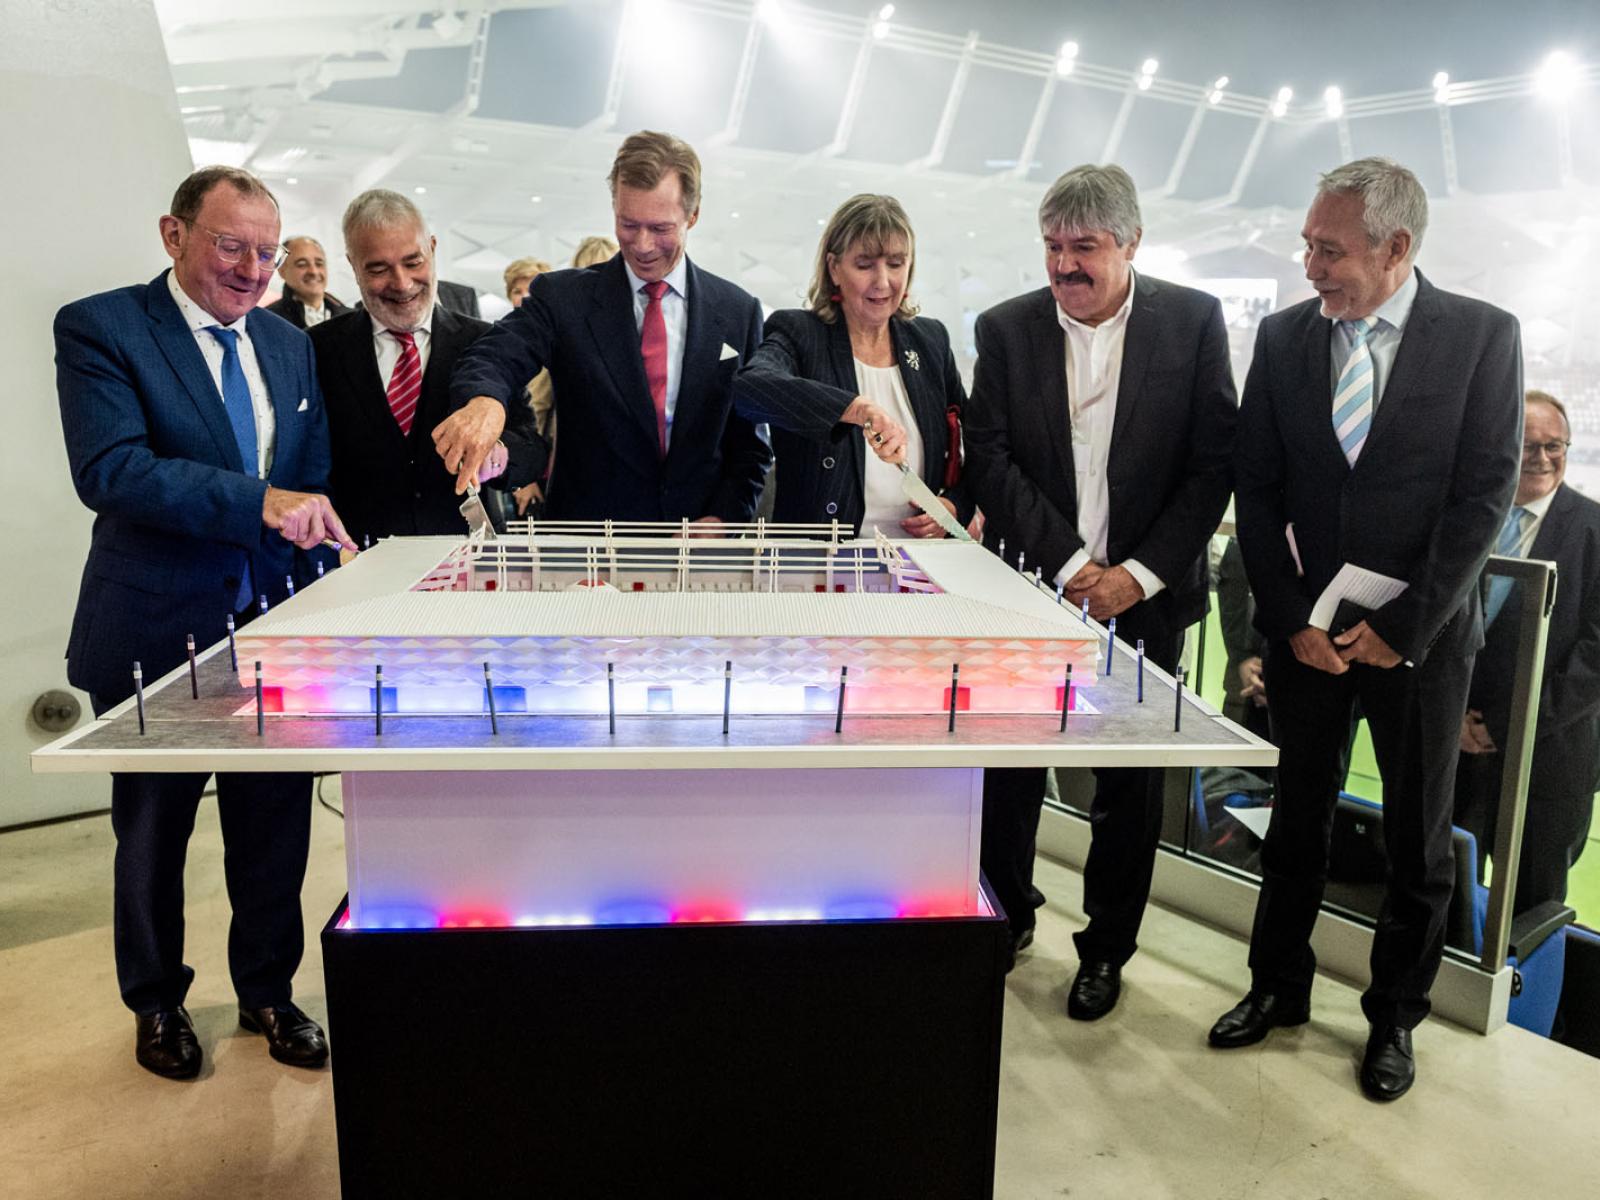 Le Grand-Duc et les invités découpent le gâteau "Stade de Luxembourg"